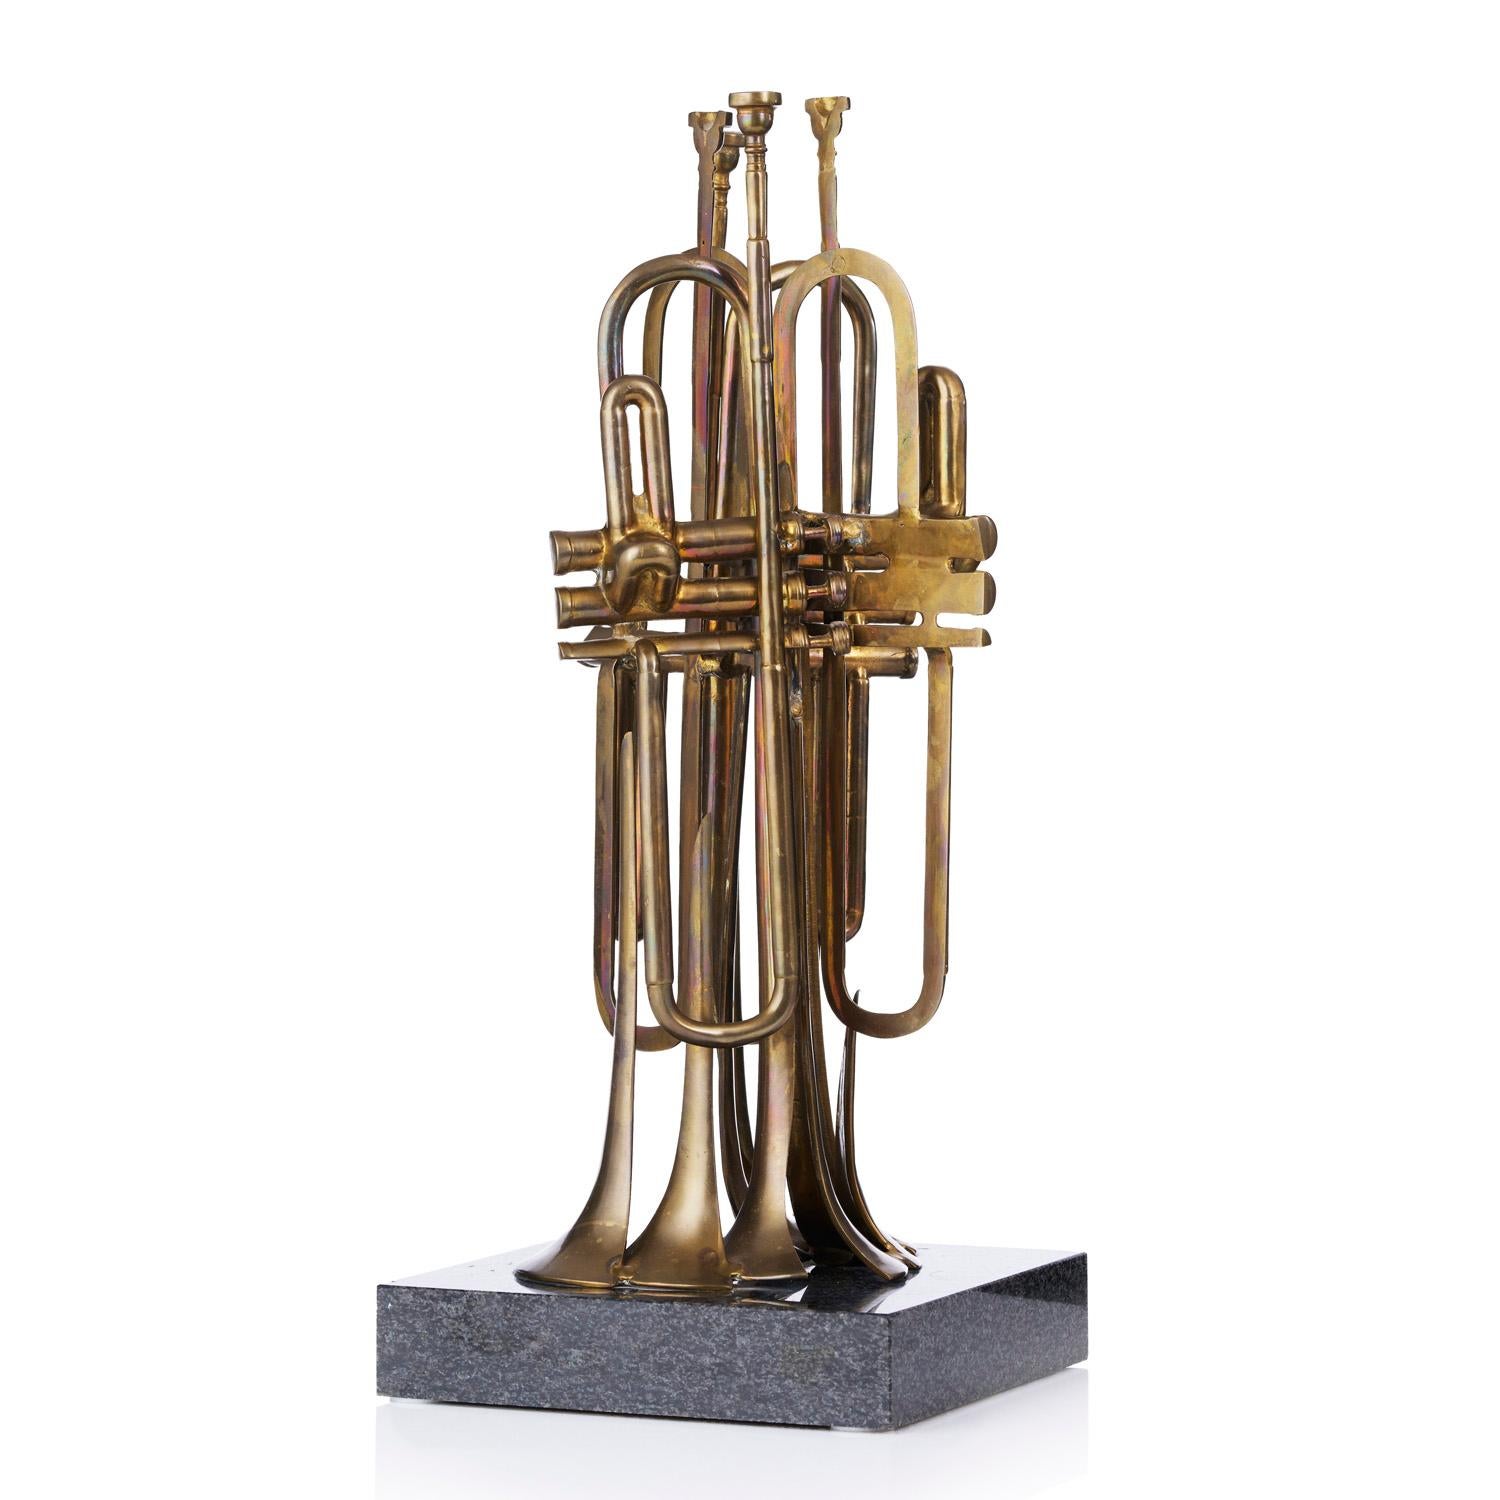 La trompette coupée - Sculpture by Fernandez Arman